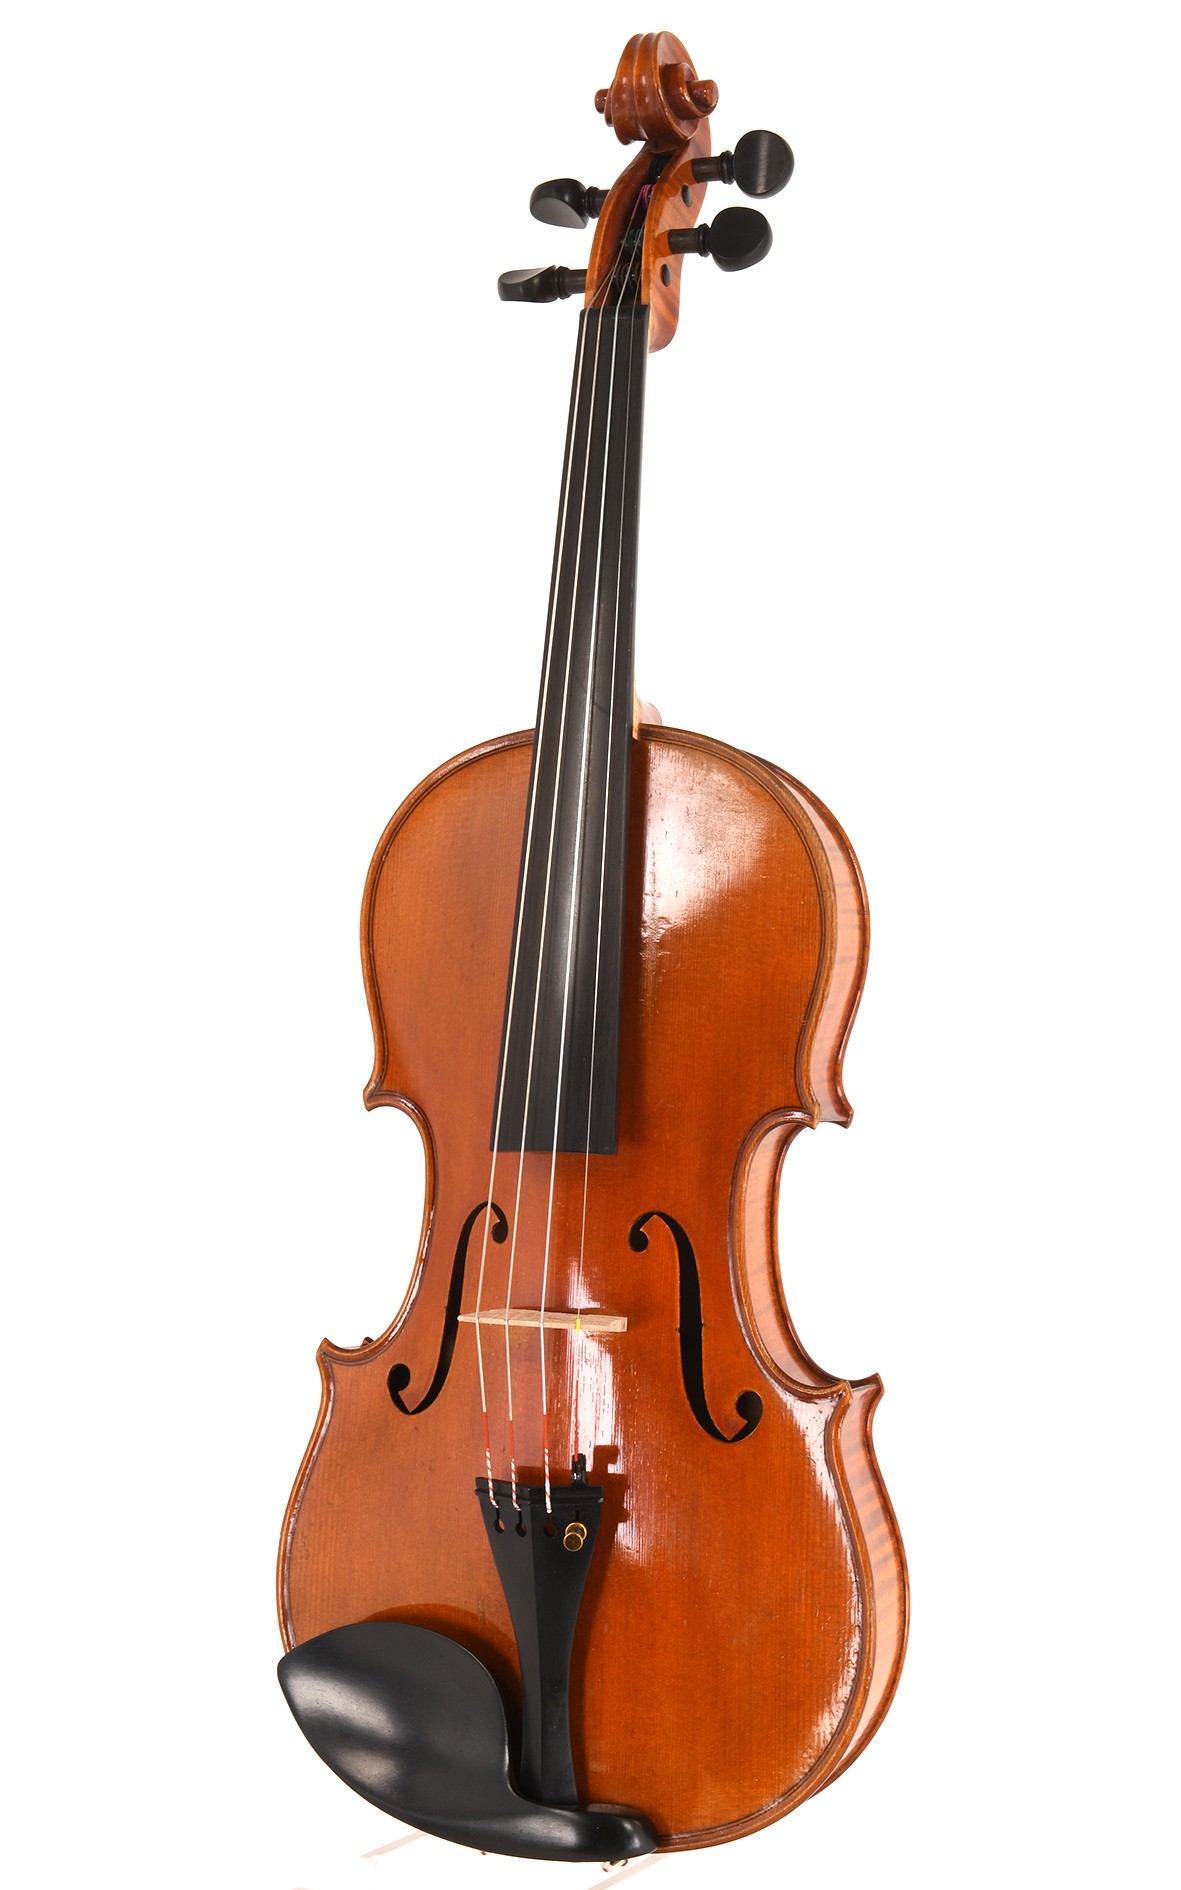 Markneukirchen violin of master craftsmanship tradition, built around 1940